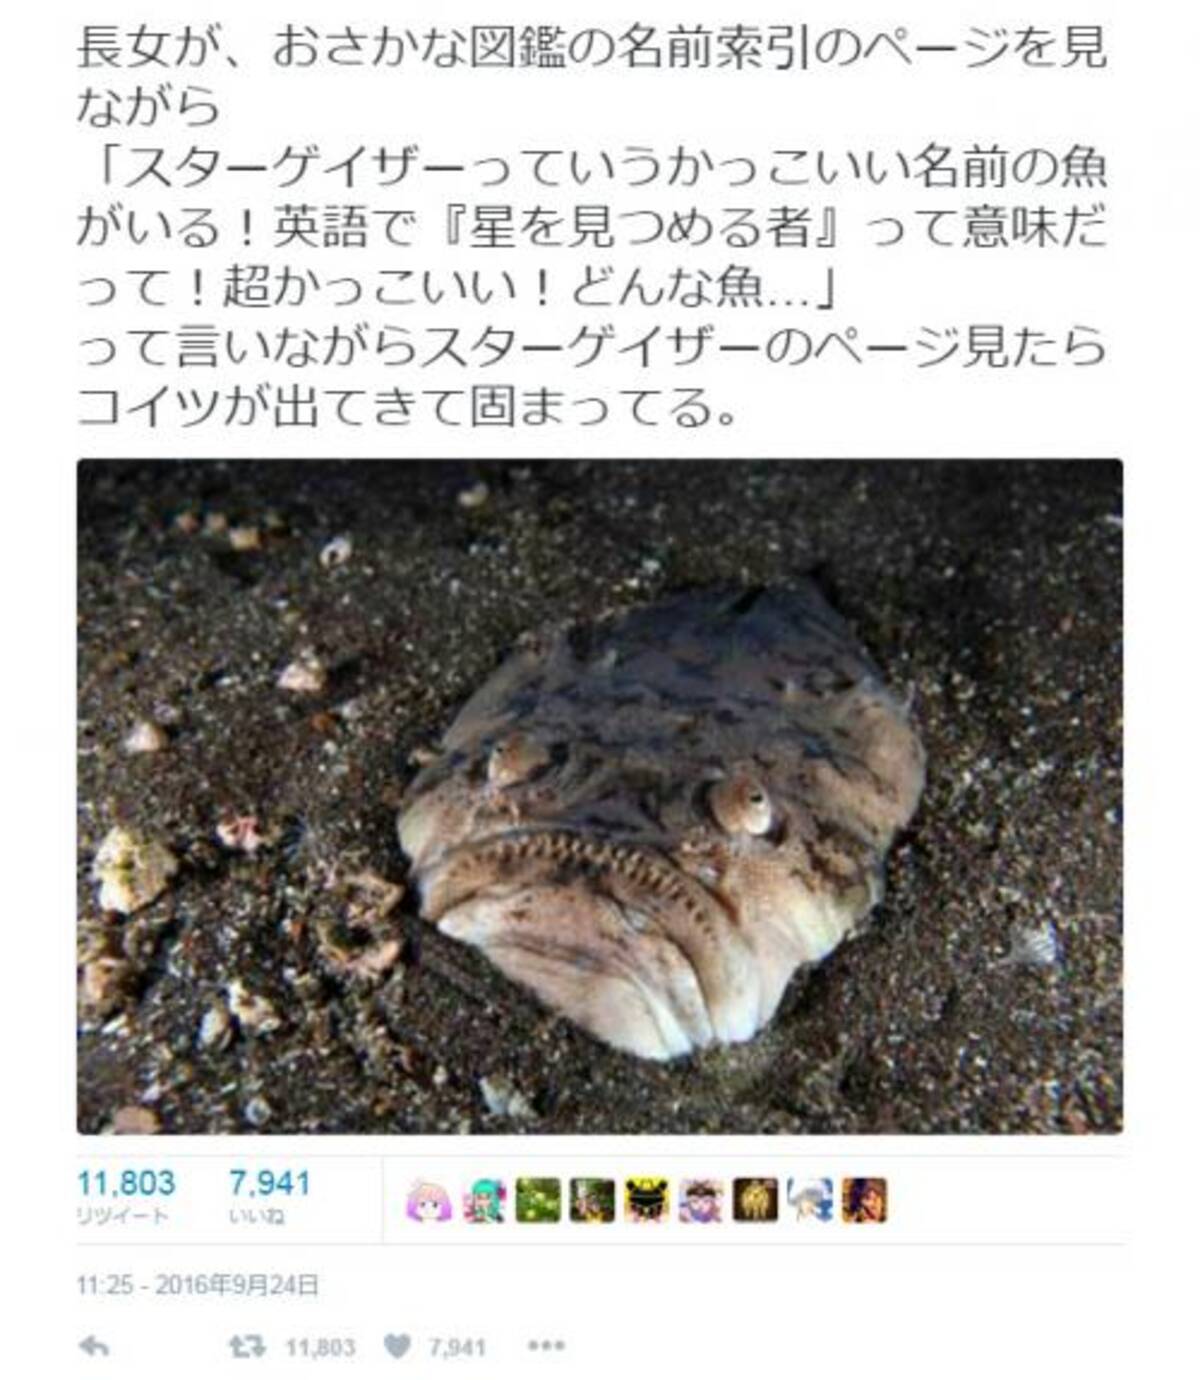 スターゲイザーっていうかっこいい名前の魚がいる お魚図鑑の写真に衝撃 Twitter で話題に 16年9月25日 エキサイトニュース